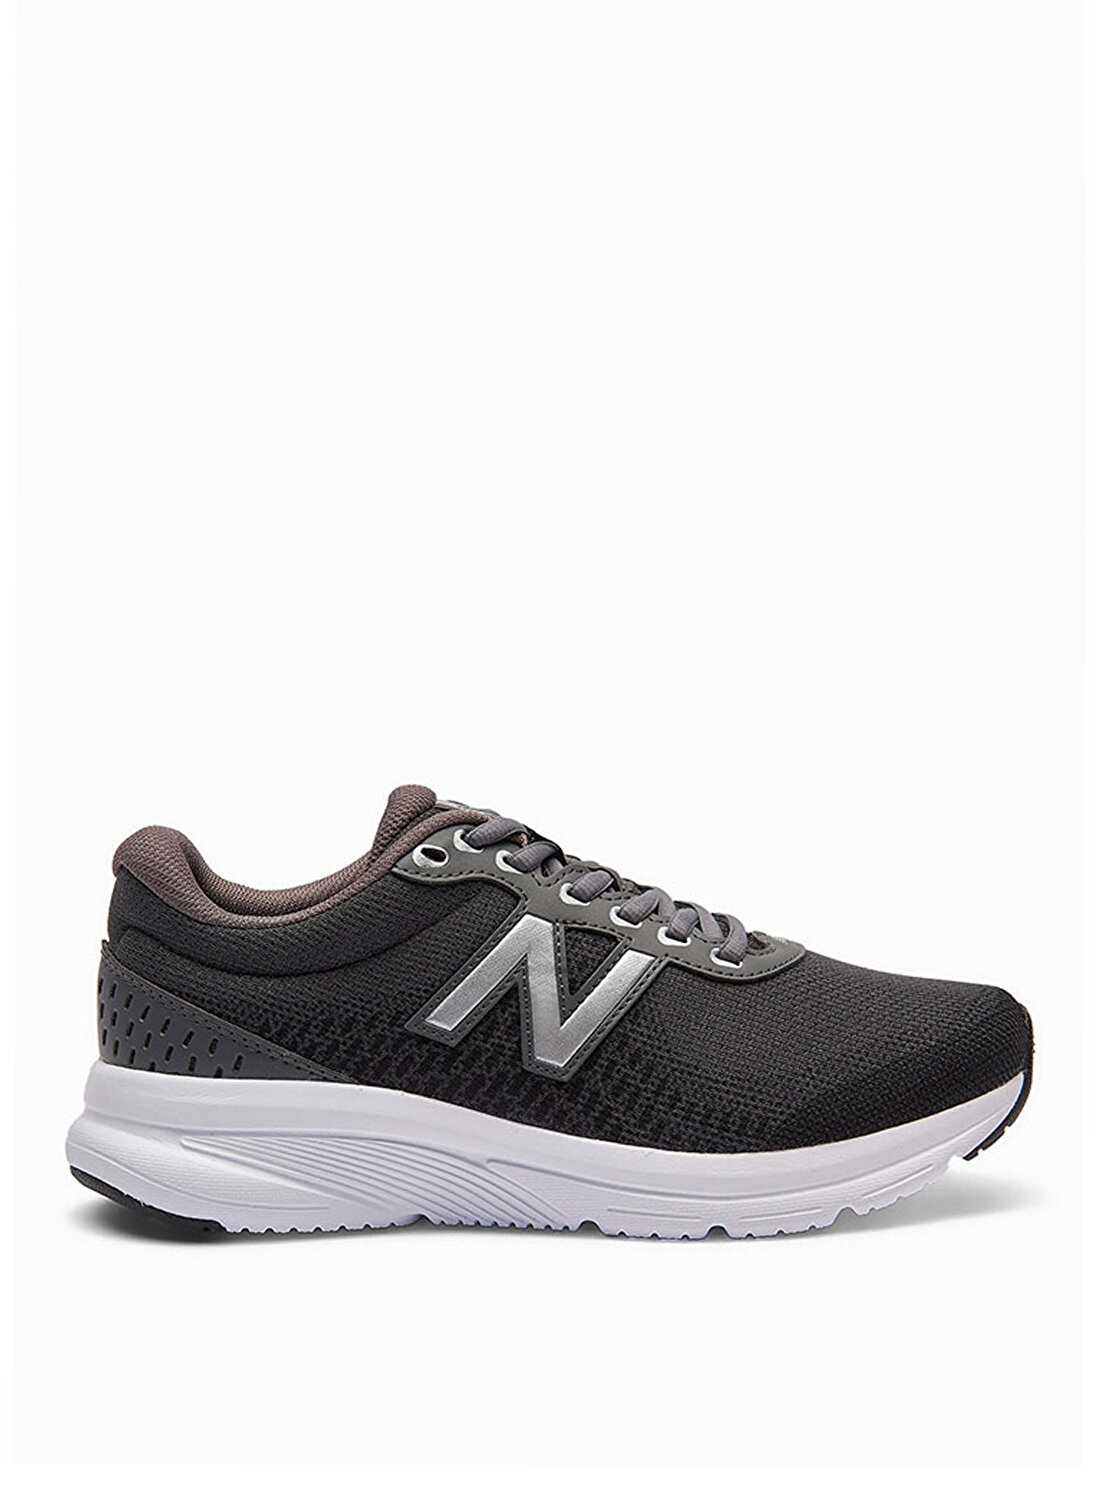 New Balance 411 Antrasit Erkek Koşu Ayakkabısı M411AN2-NB  